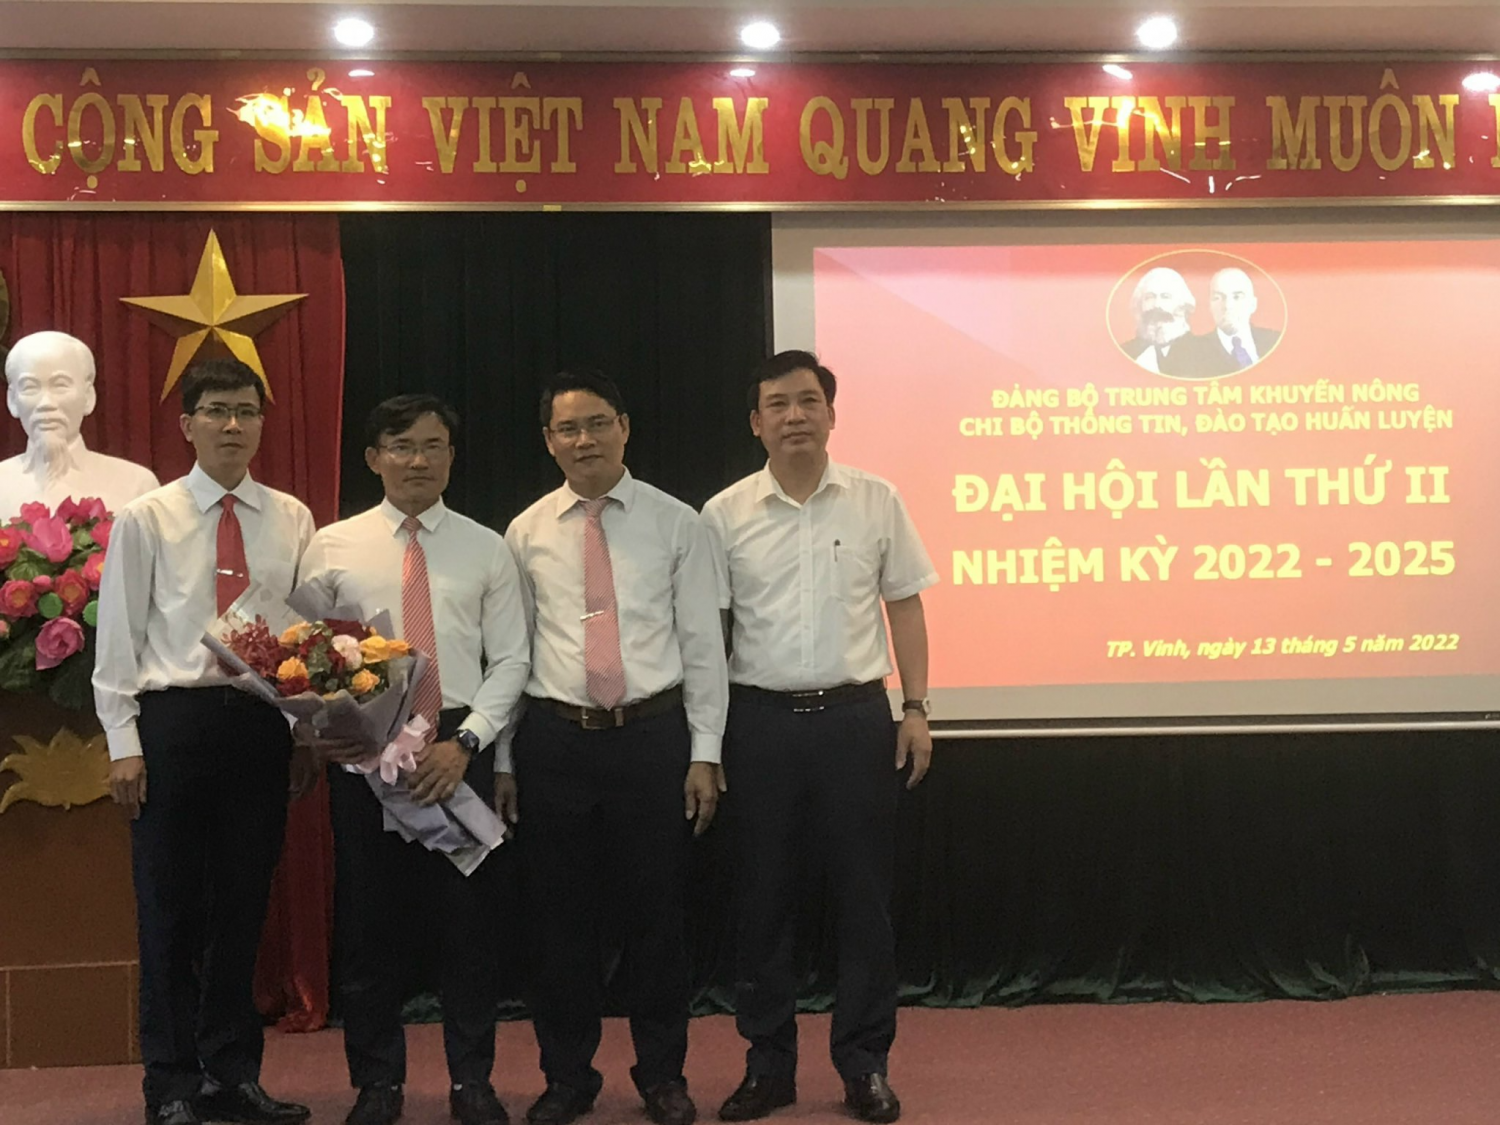 Đảng ủy Trung tâm Khuyến nông Nghệ An: Chỉ đạo thành công đại hội các chi bộ trực thuộc nhiệm kỳ 2022 - 2025